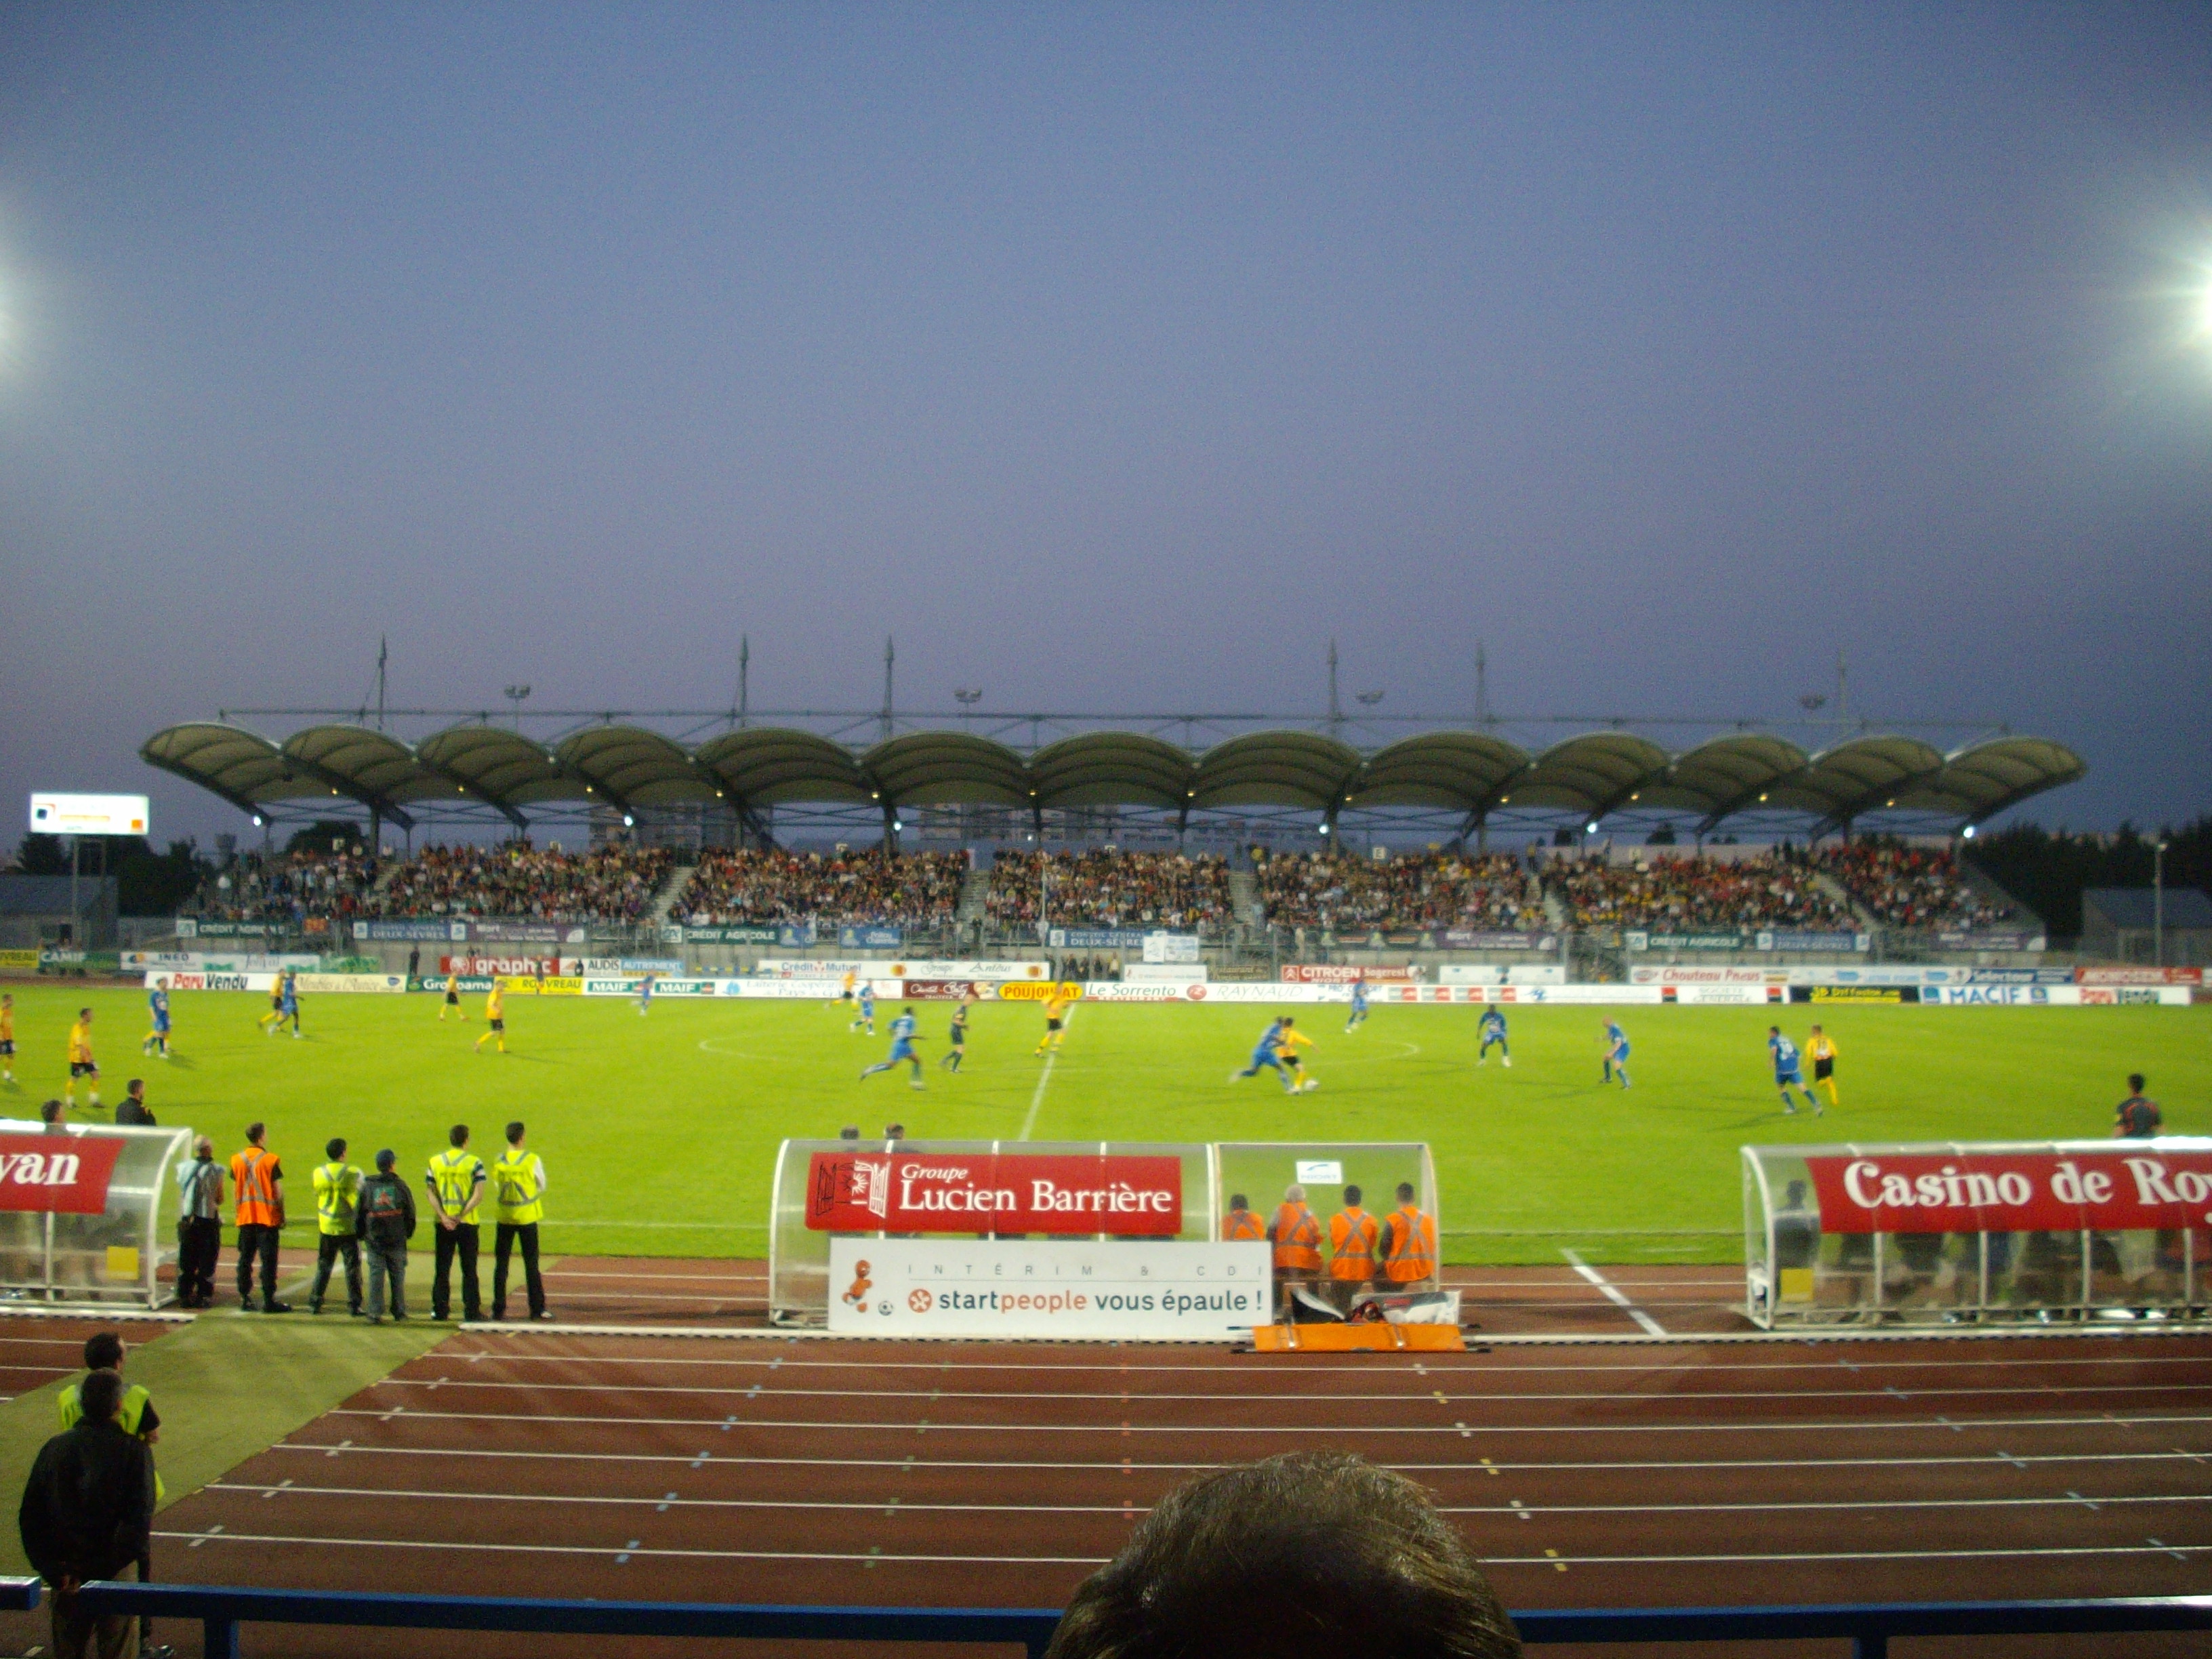 René Gaillard Stadium